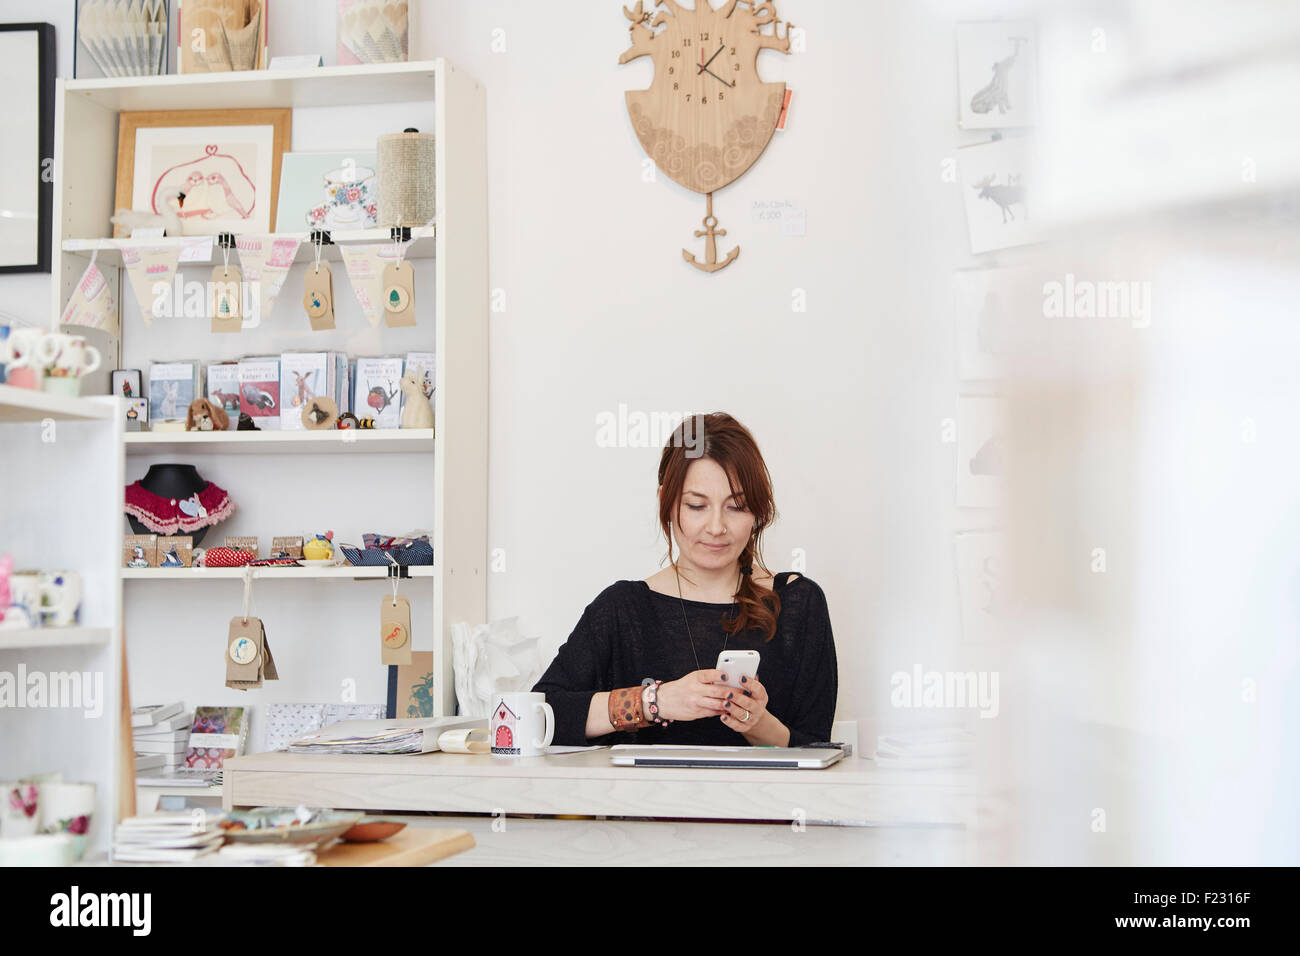 Eine ältere Frau sitzt mit einem Smartphone in einen Souvenirladen, einen kleinen Einzelhandel Geschäftsbetrieb. Stockfoto